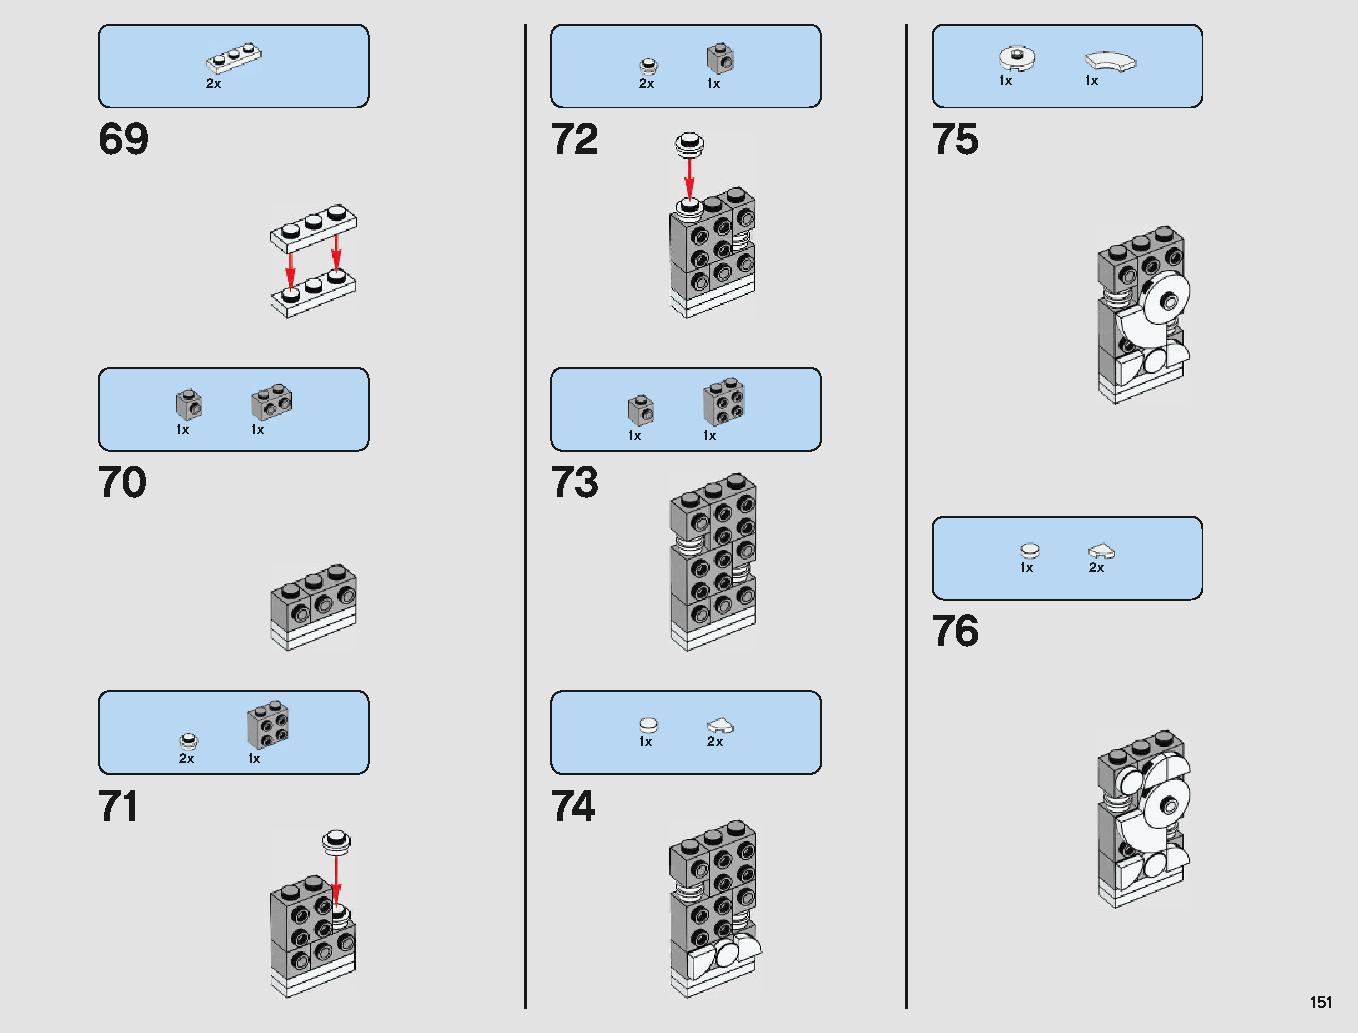 クラウド・シティ 75222 レゴの商品情報 レゴの説明書・組立方法 151 page